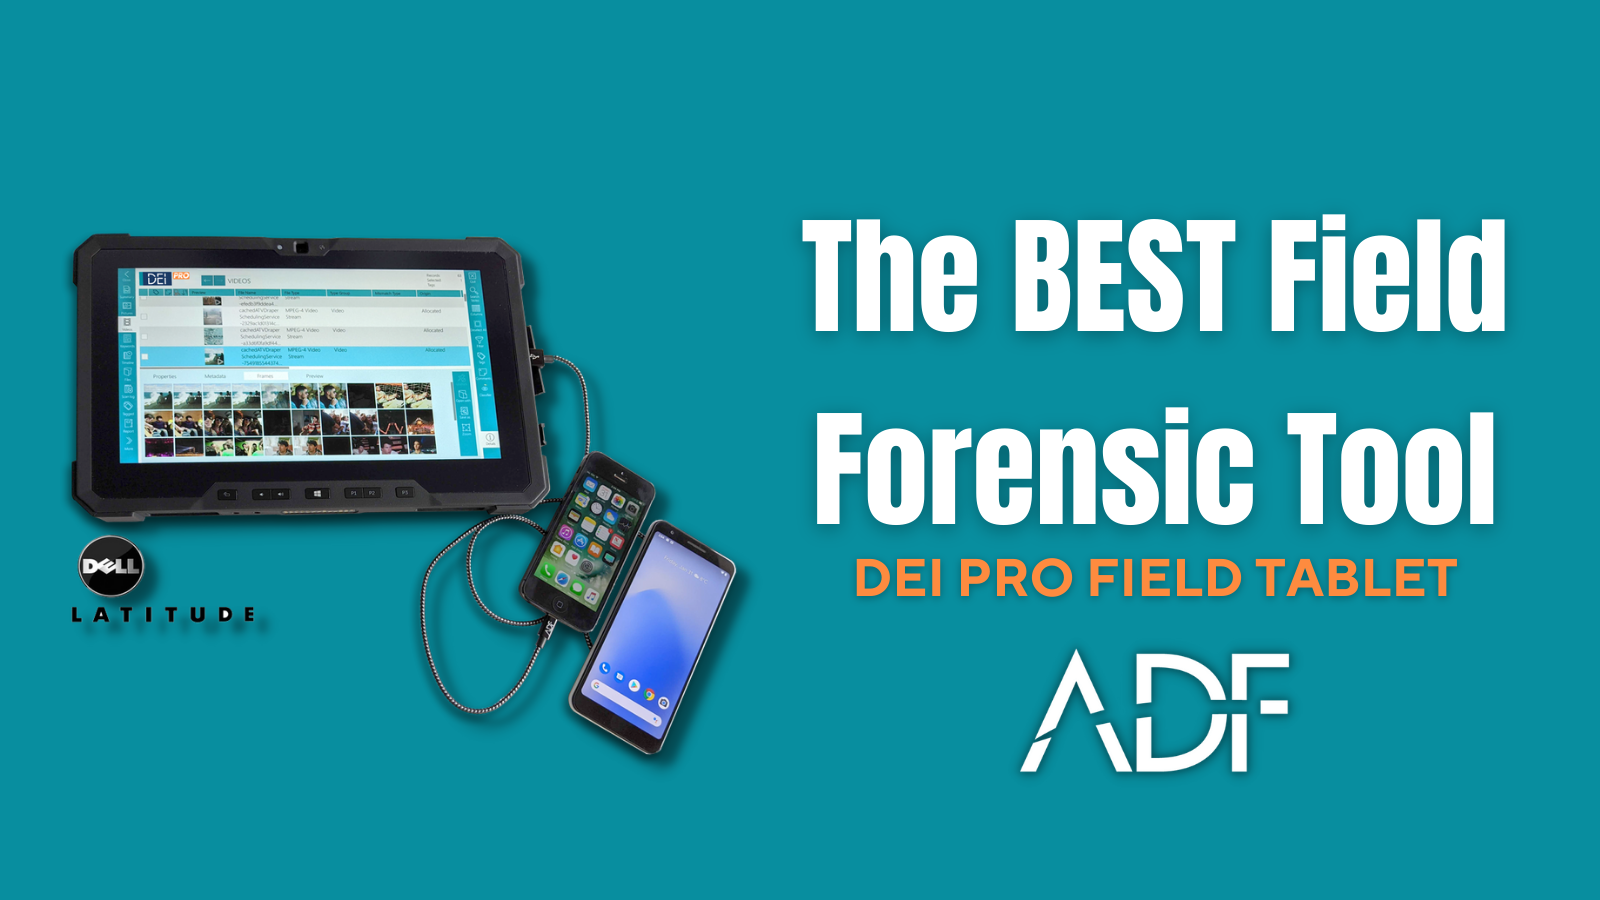 Meet the Best Field Forensic Tool: DEI PRO Field Tablet